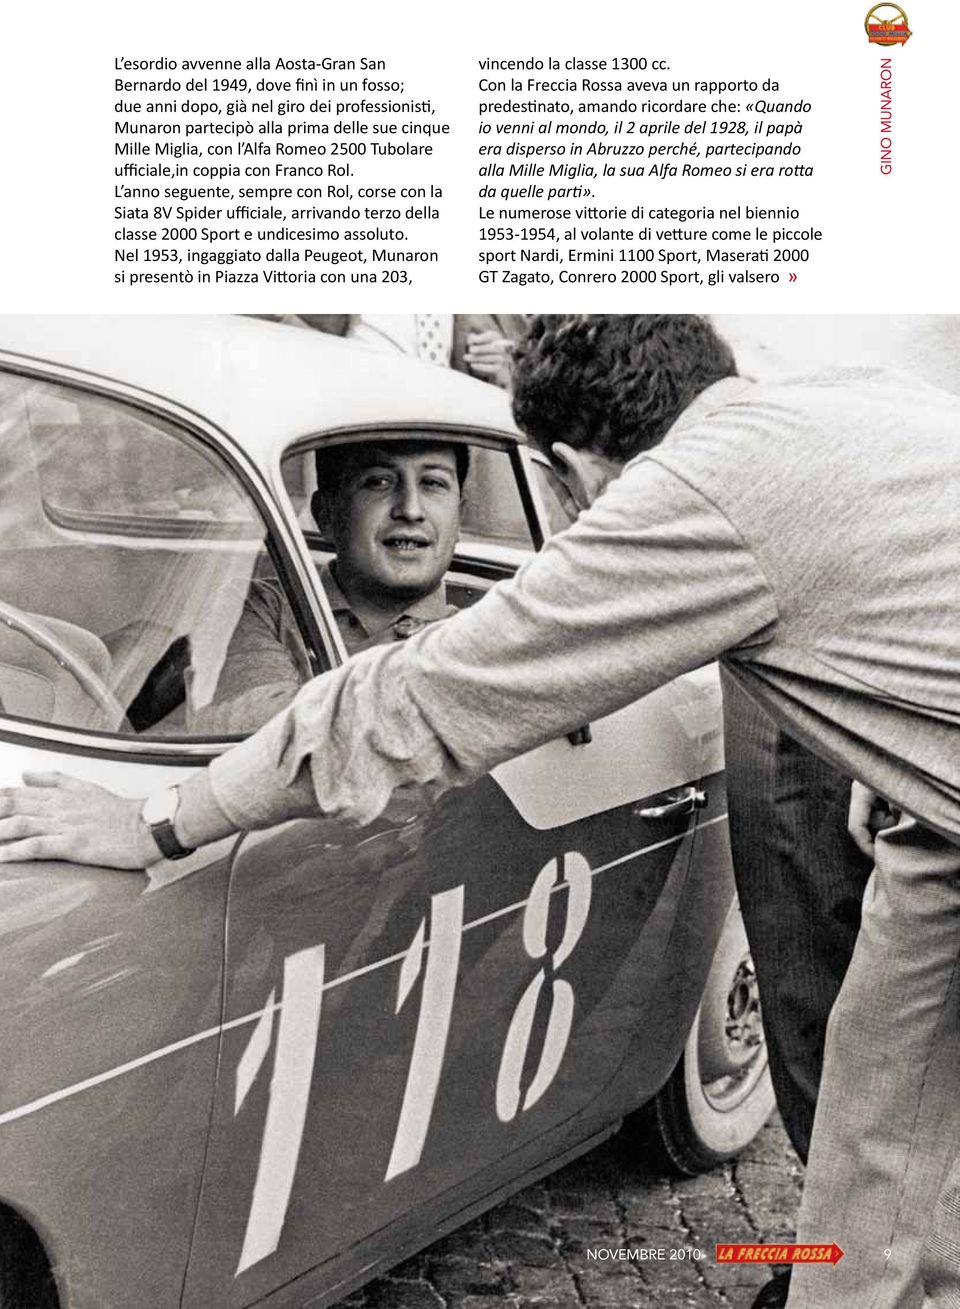 Nel 1953, ingaggiato dalla Peugeot, Munaron si presentò in Piazza Vittoria con una 203, vincendo la classe 1300 cc.